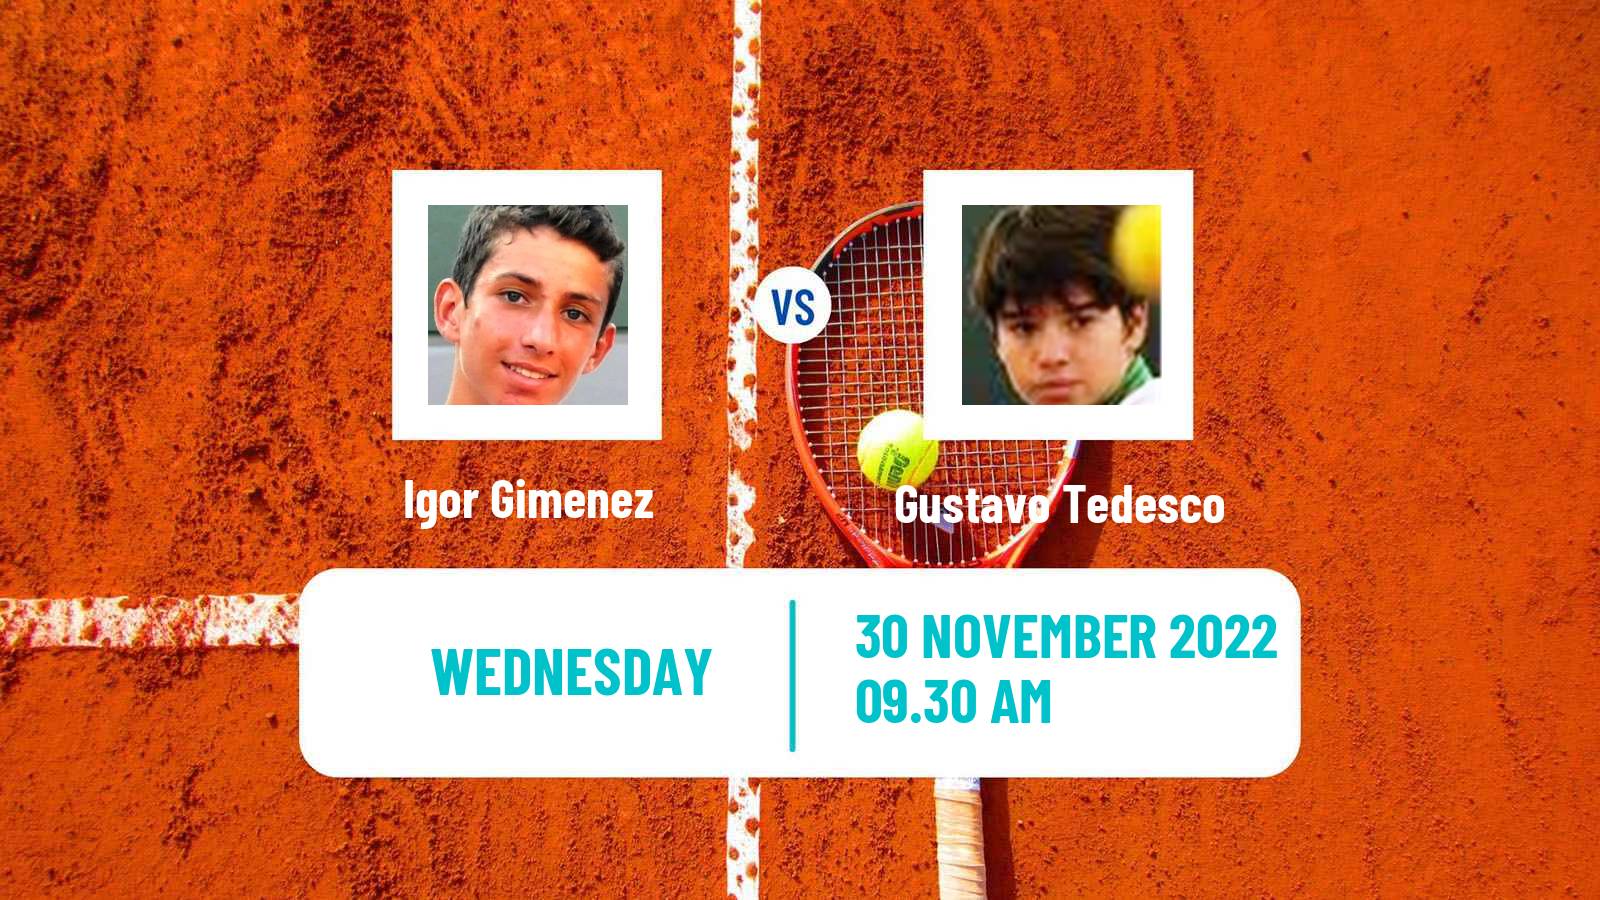 Tennis ITF Tournaments Igor Gimenez - Gustavo Tedesco